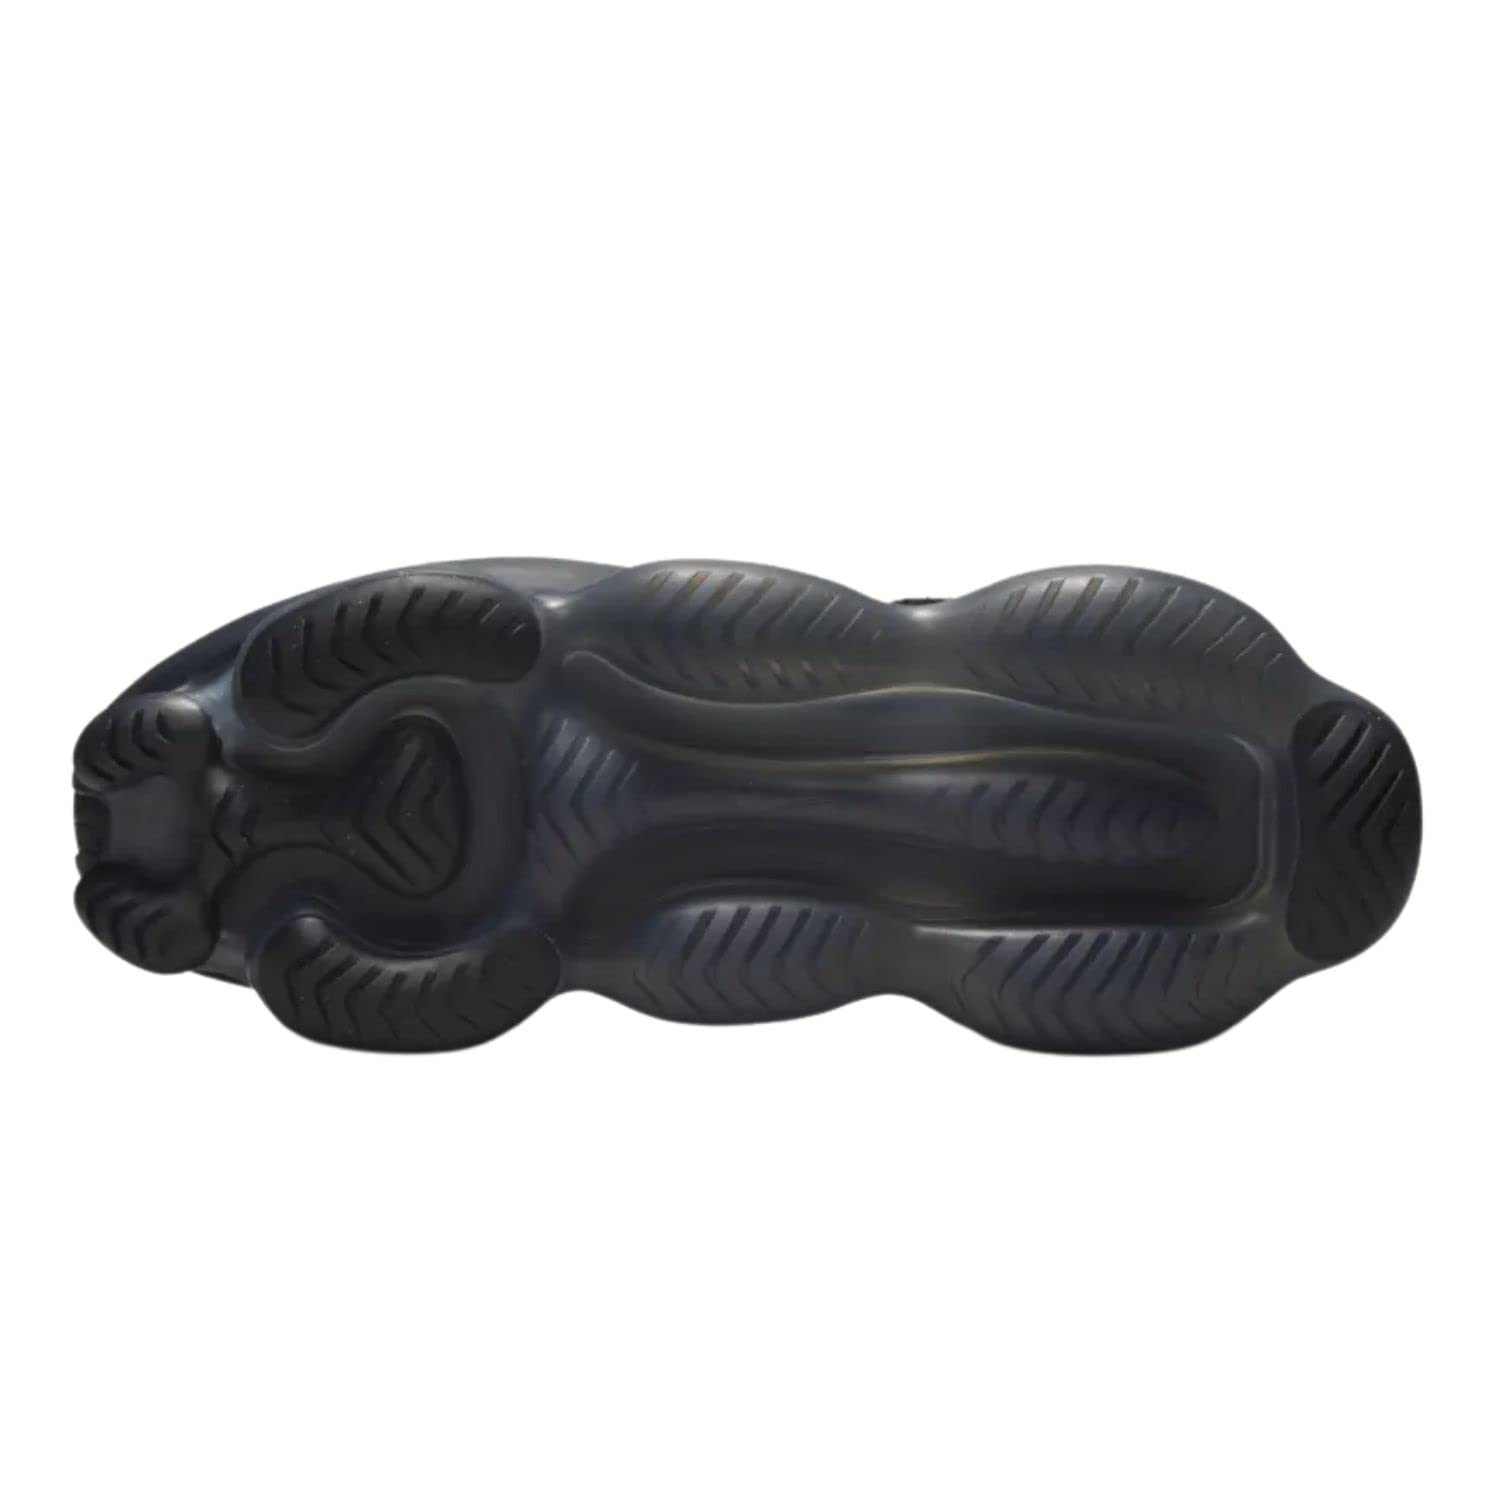 Nike Mens Air Max Scorpion Flyknit DJ4701 003 Triple Black - Size 11